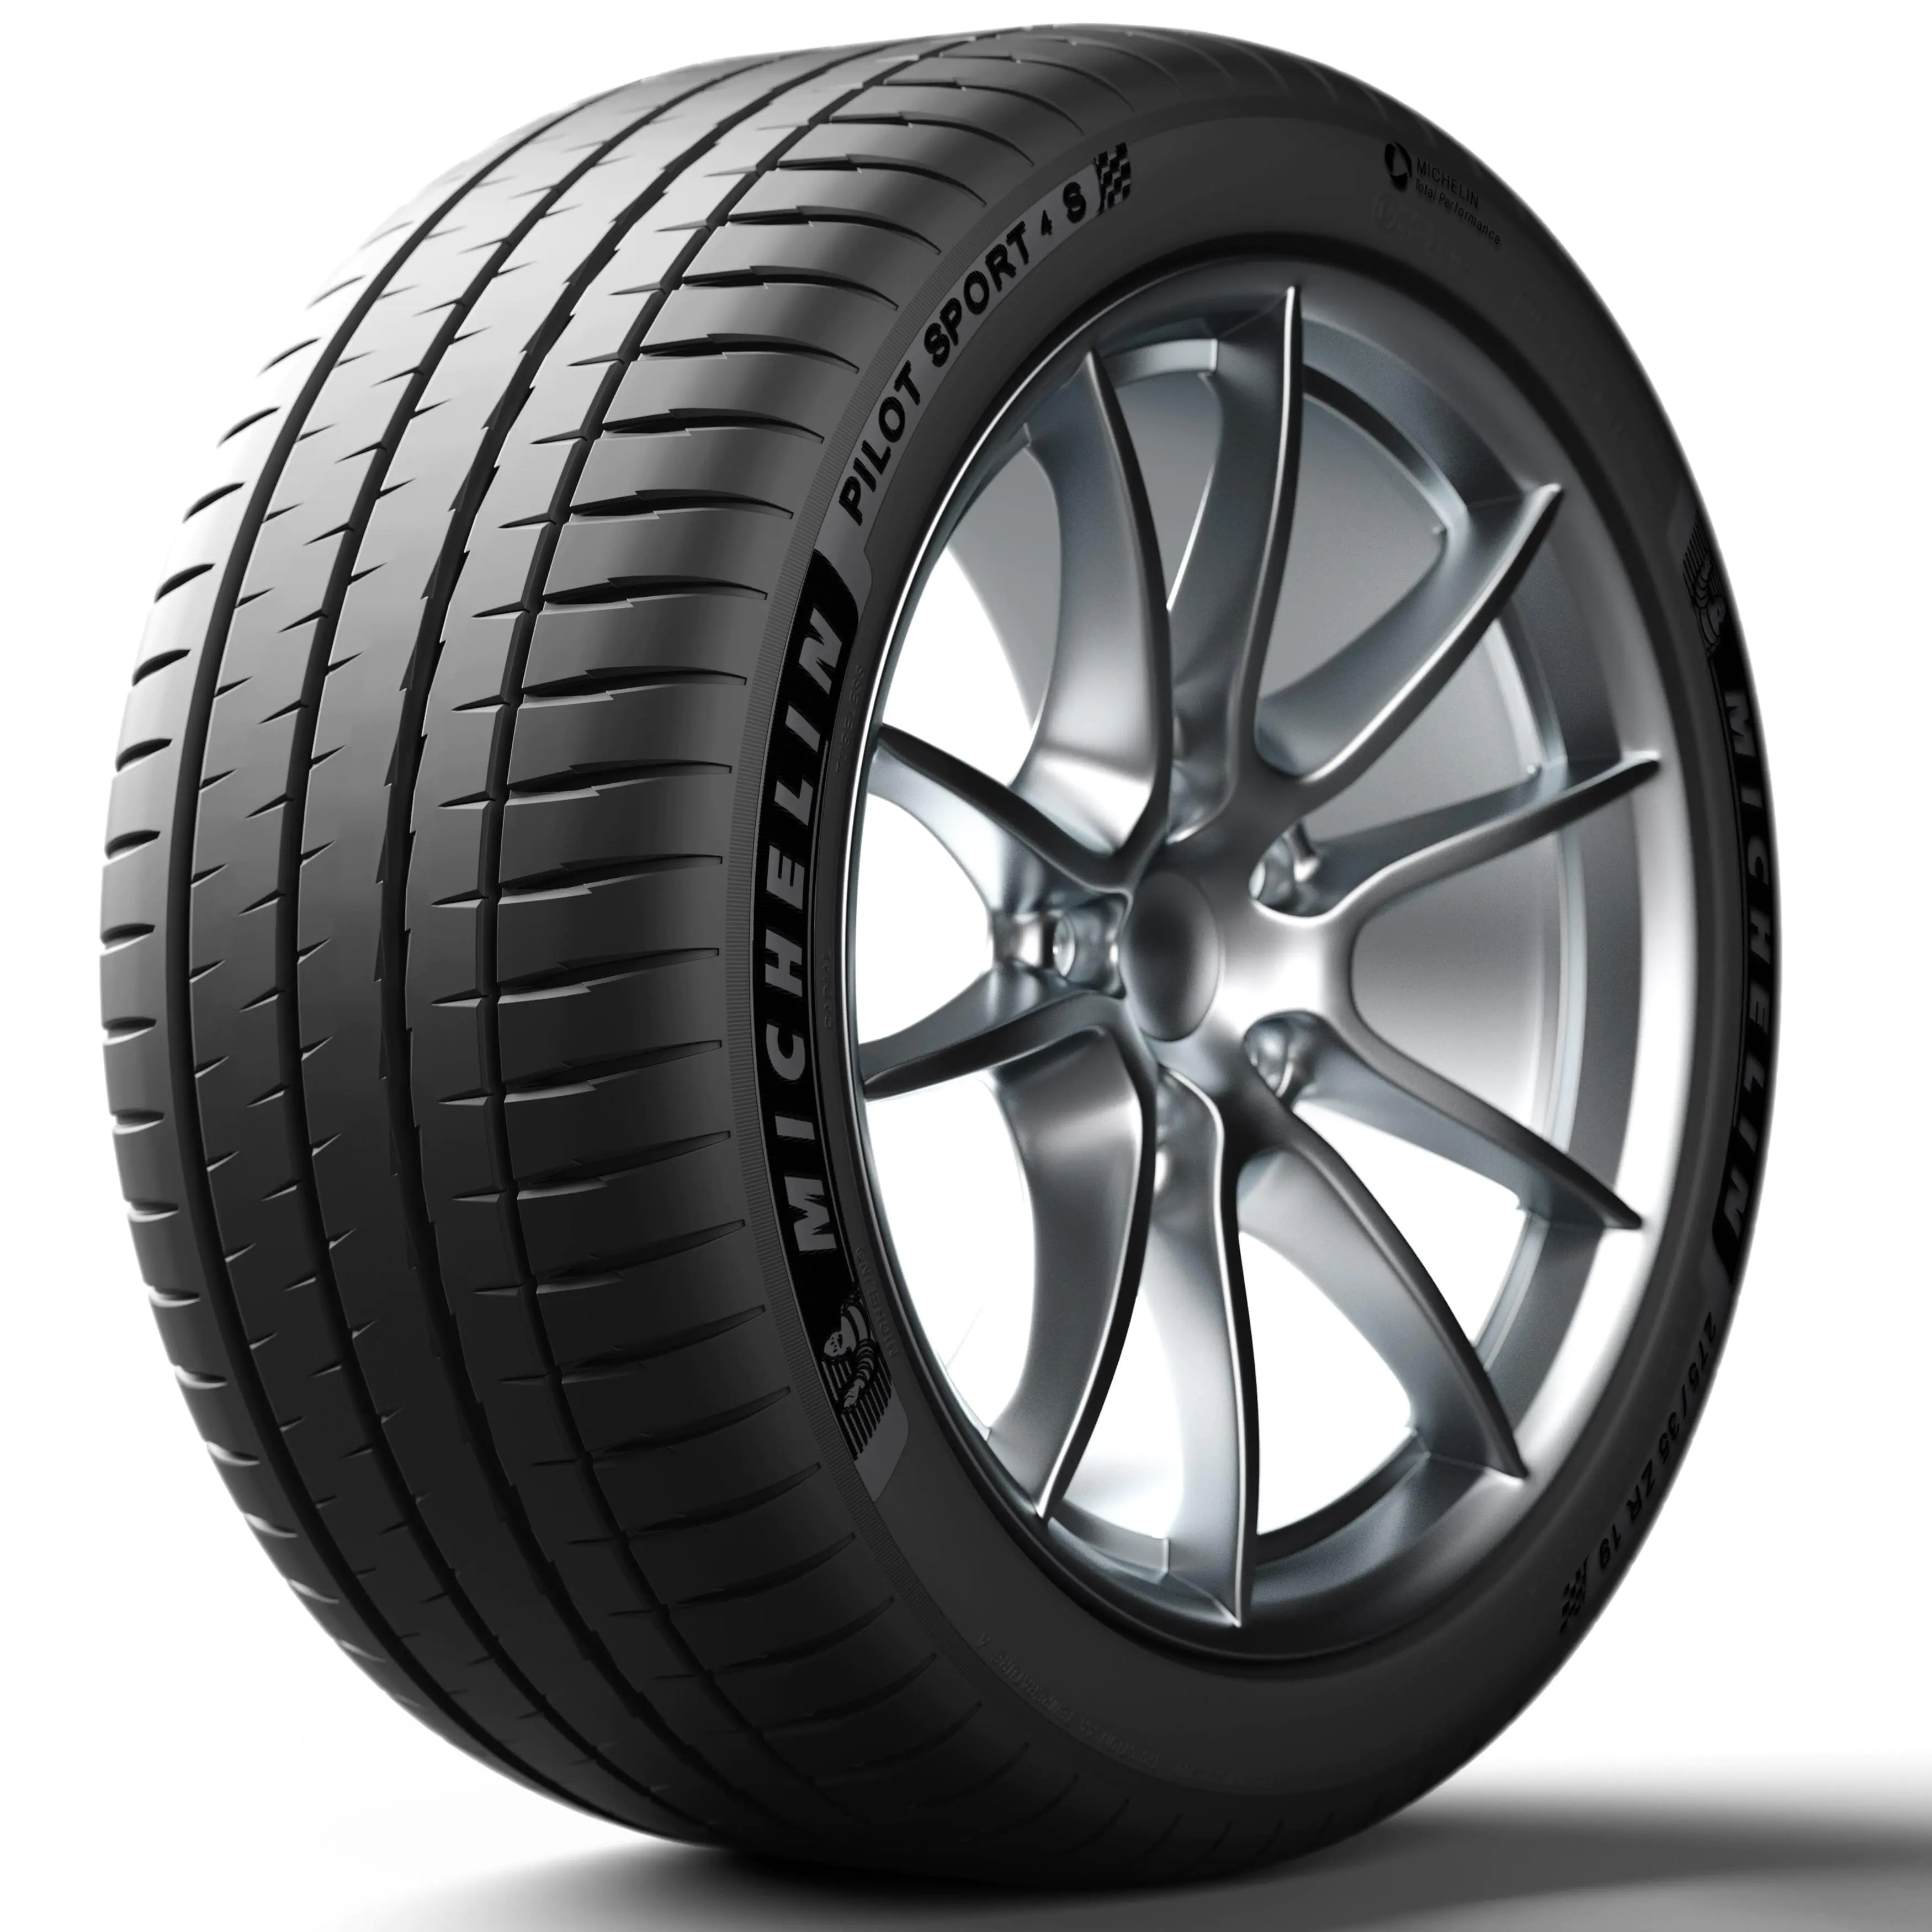 Michelin Michelin 265/40 R22 106Y Pilotsport4s XL pneumatici nuovi Estivo 